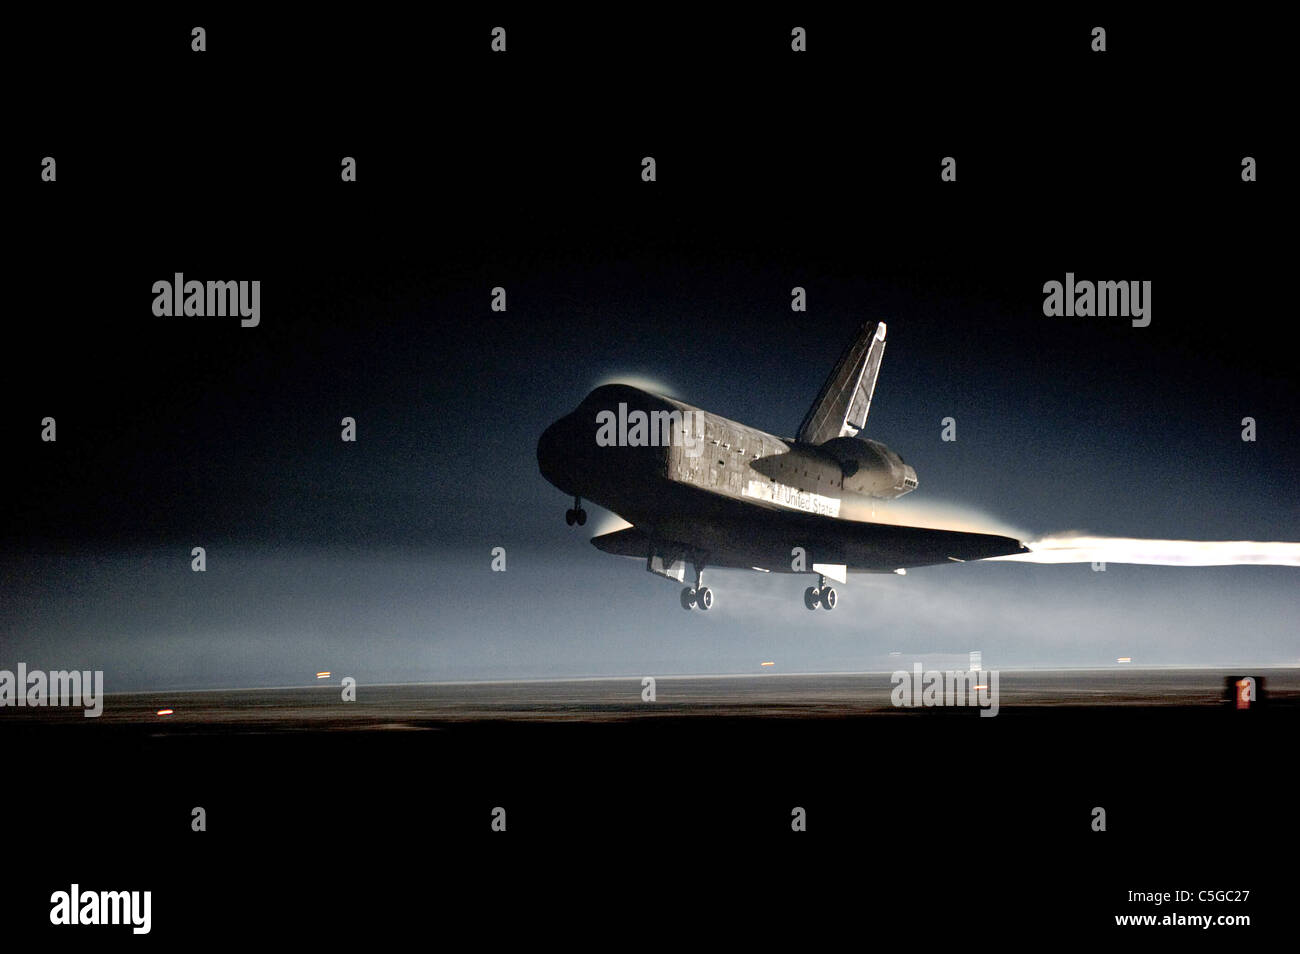 Spazio finale navetta Atlantis atterra al Kennedy Space Center Foto Stock